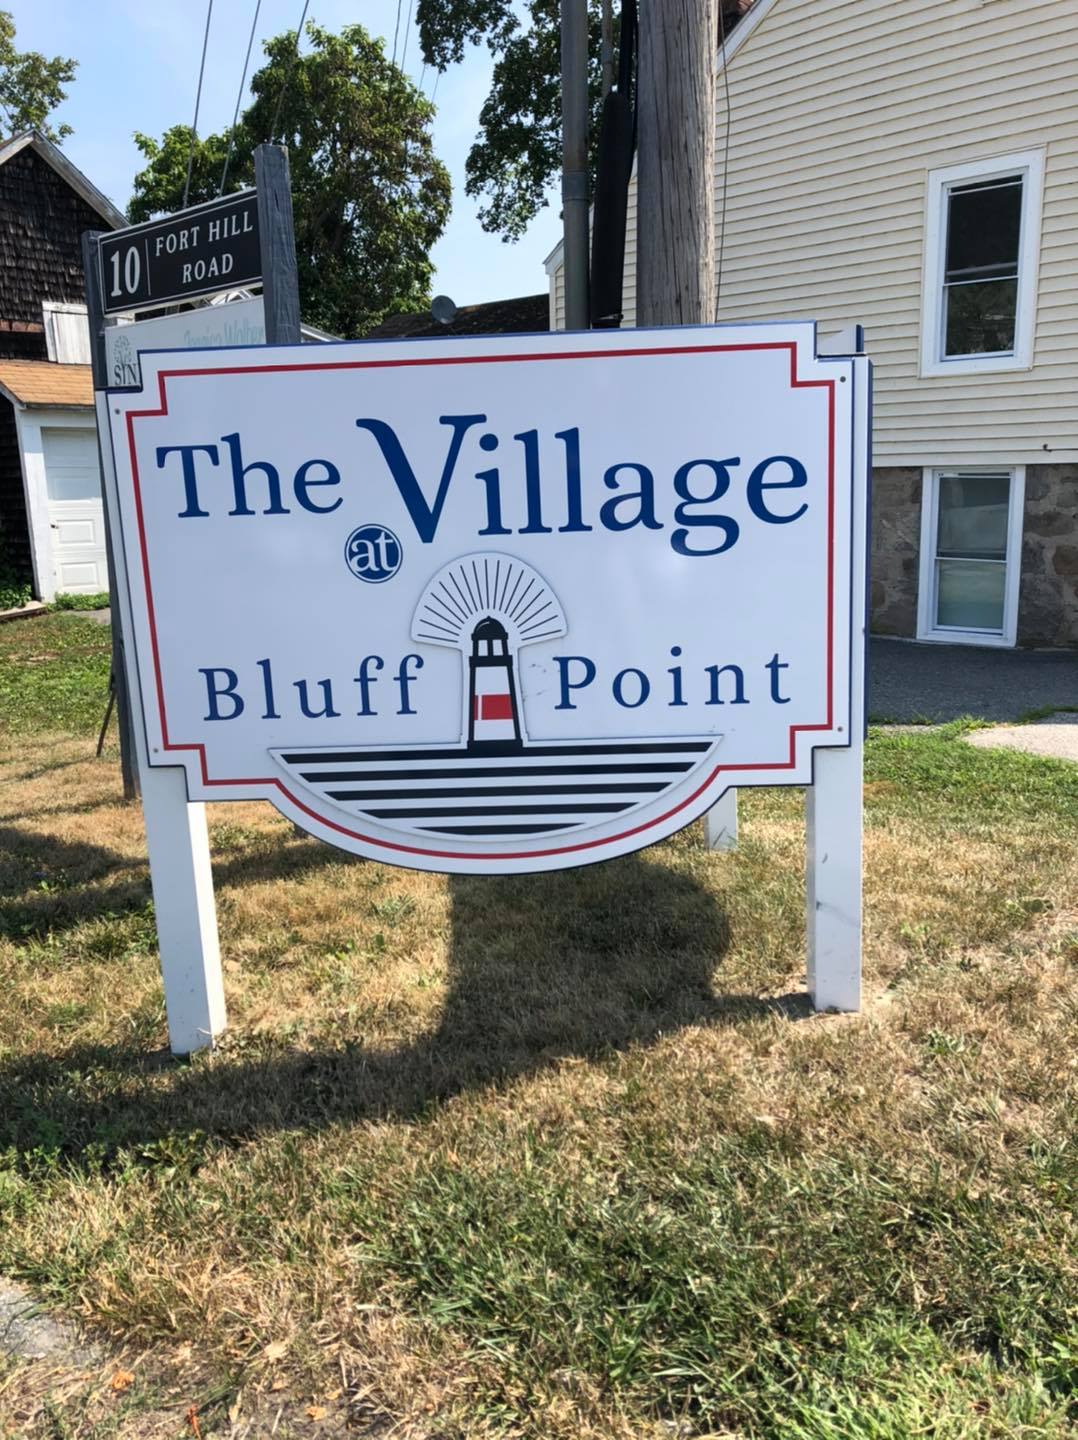 Bluff Point